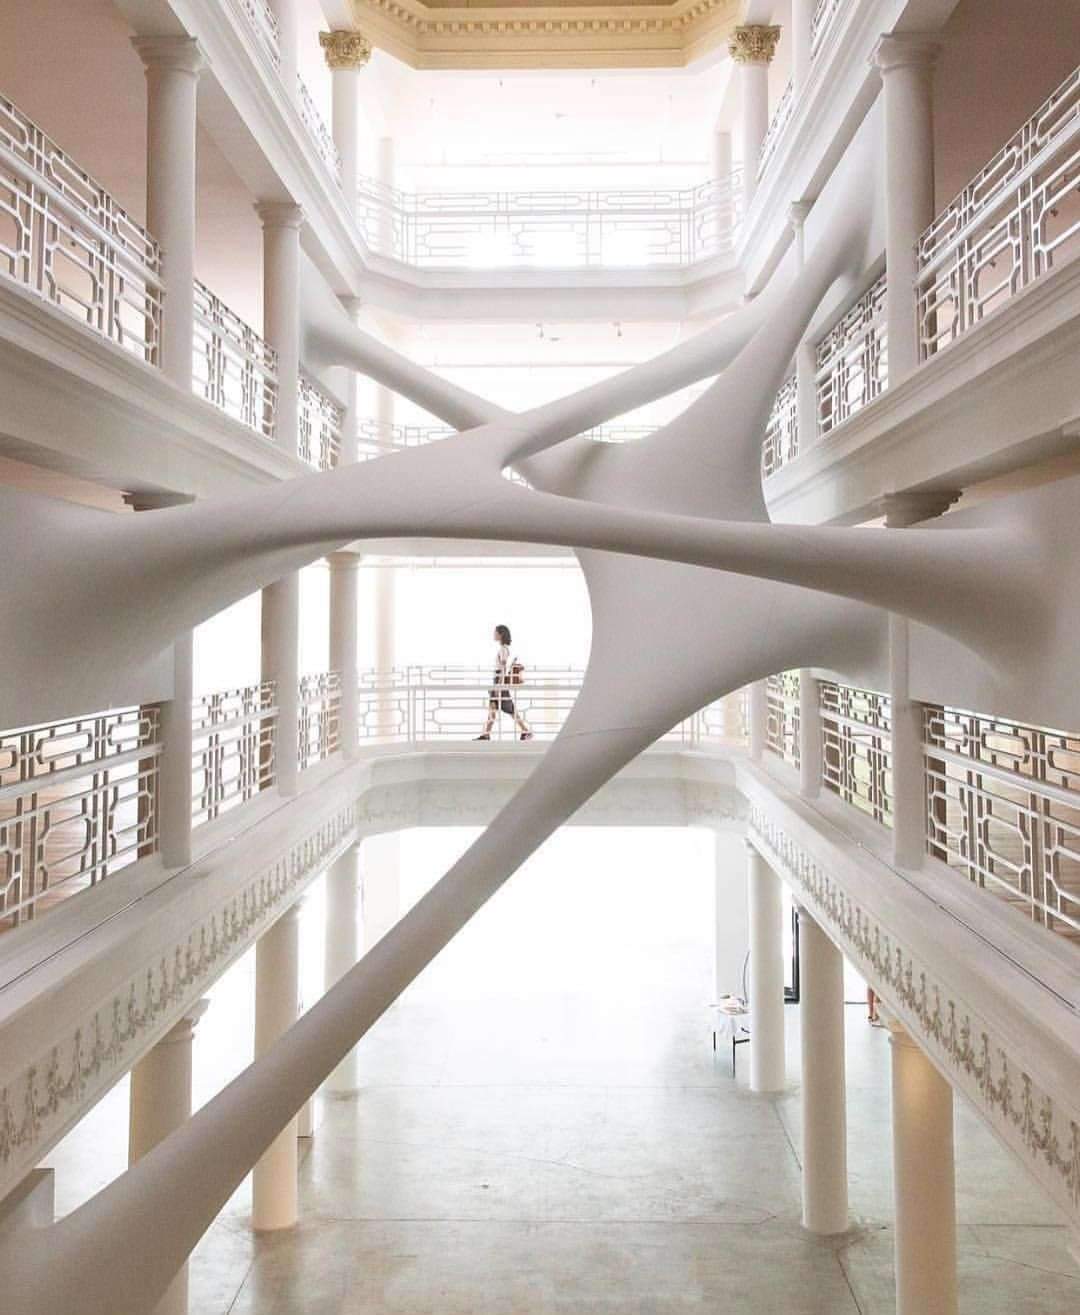 Elastika installation by Zaha Hadid Architects / Miami, Florida, USA